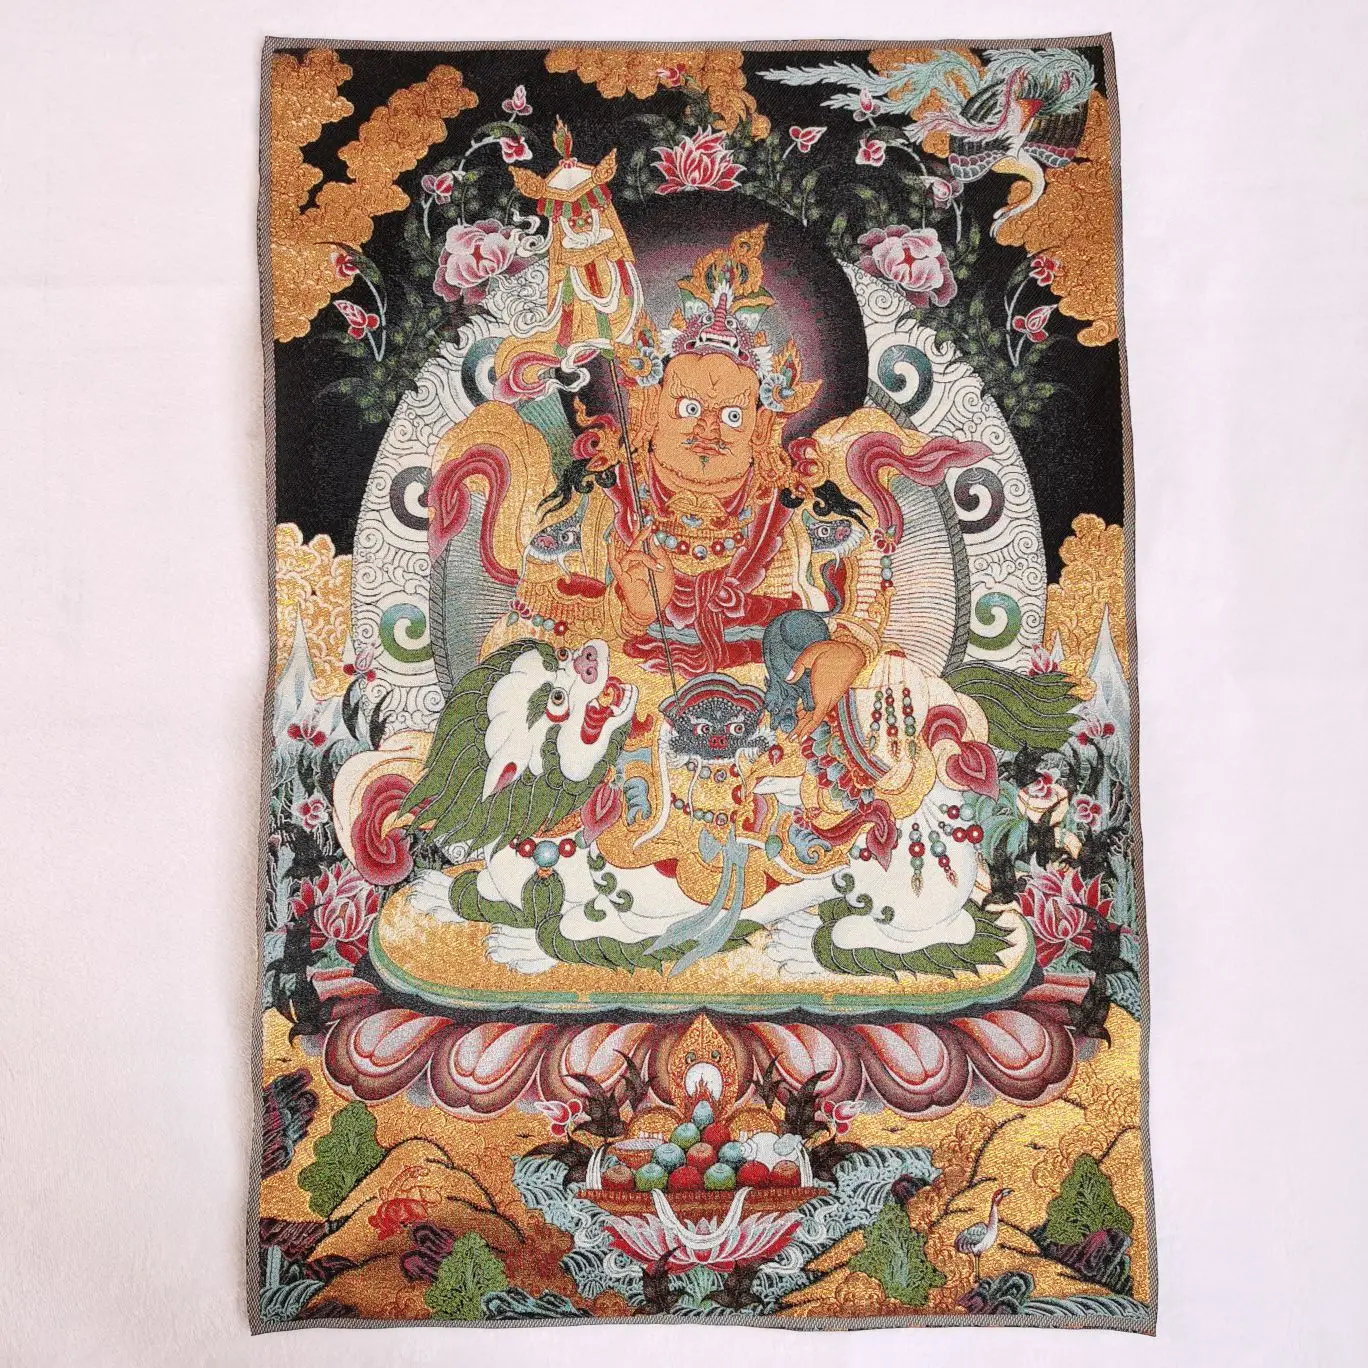 

Китайская тибетская шелковая вышивка Thangka Fengshui богатство «желтый Бог удачи» Картина роспись ручная работа домашнее украшение